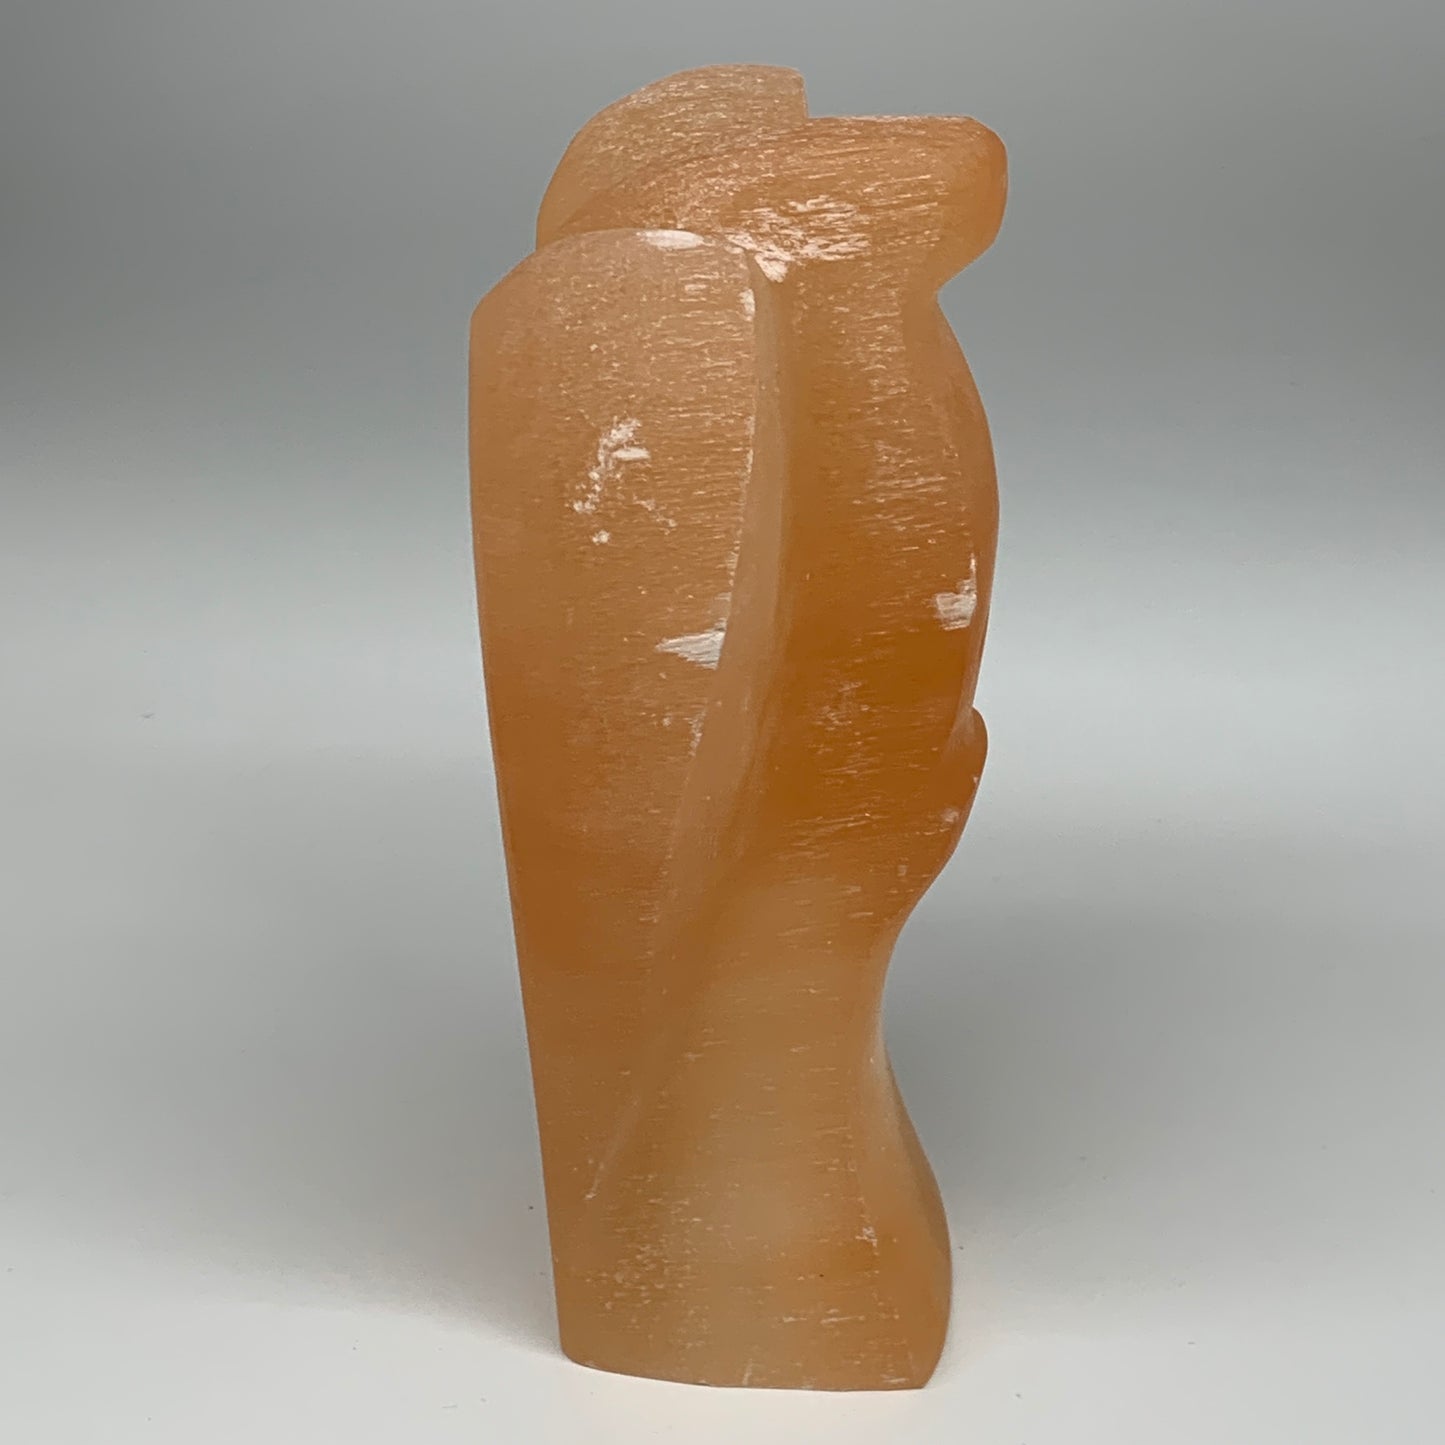 1678g, 7.75"x4.6"x2.9" Orange Selenite (Satin Spar) Angel Lamps @Morocco,B9439